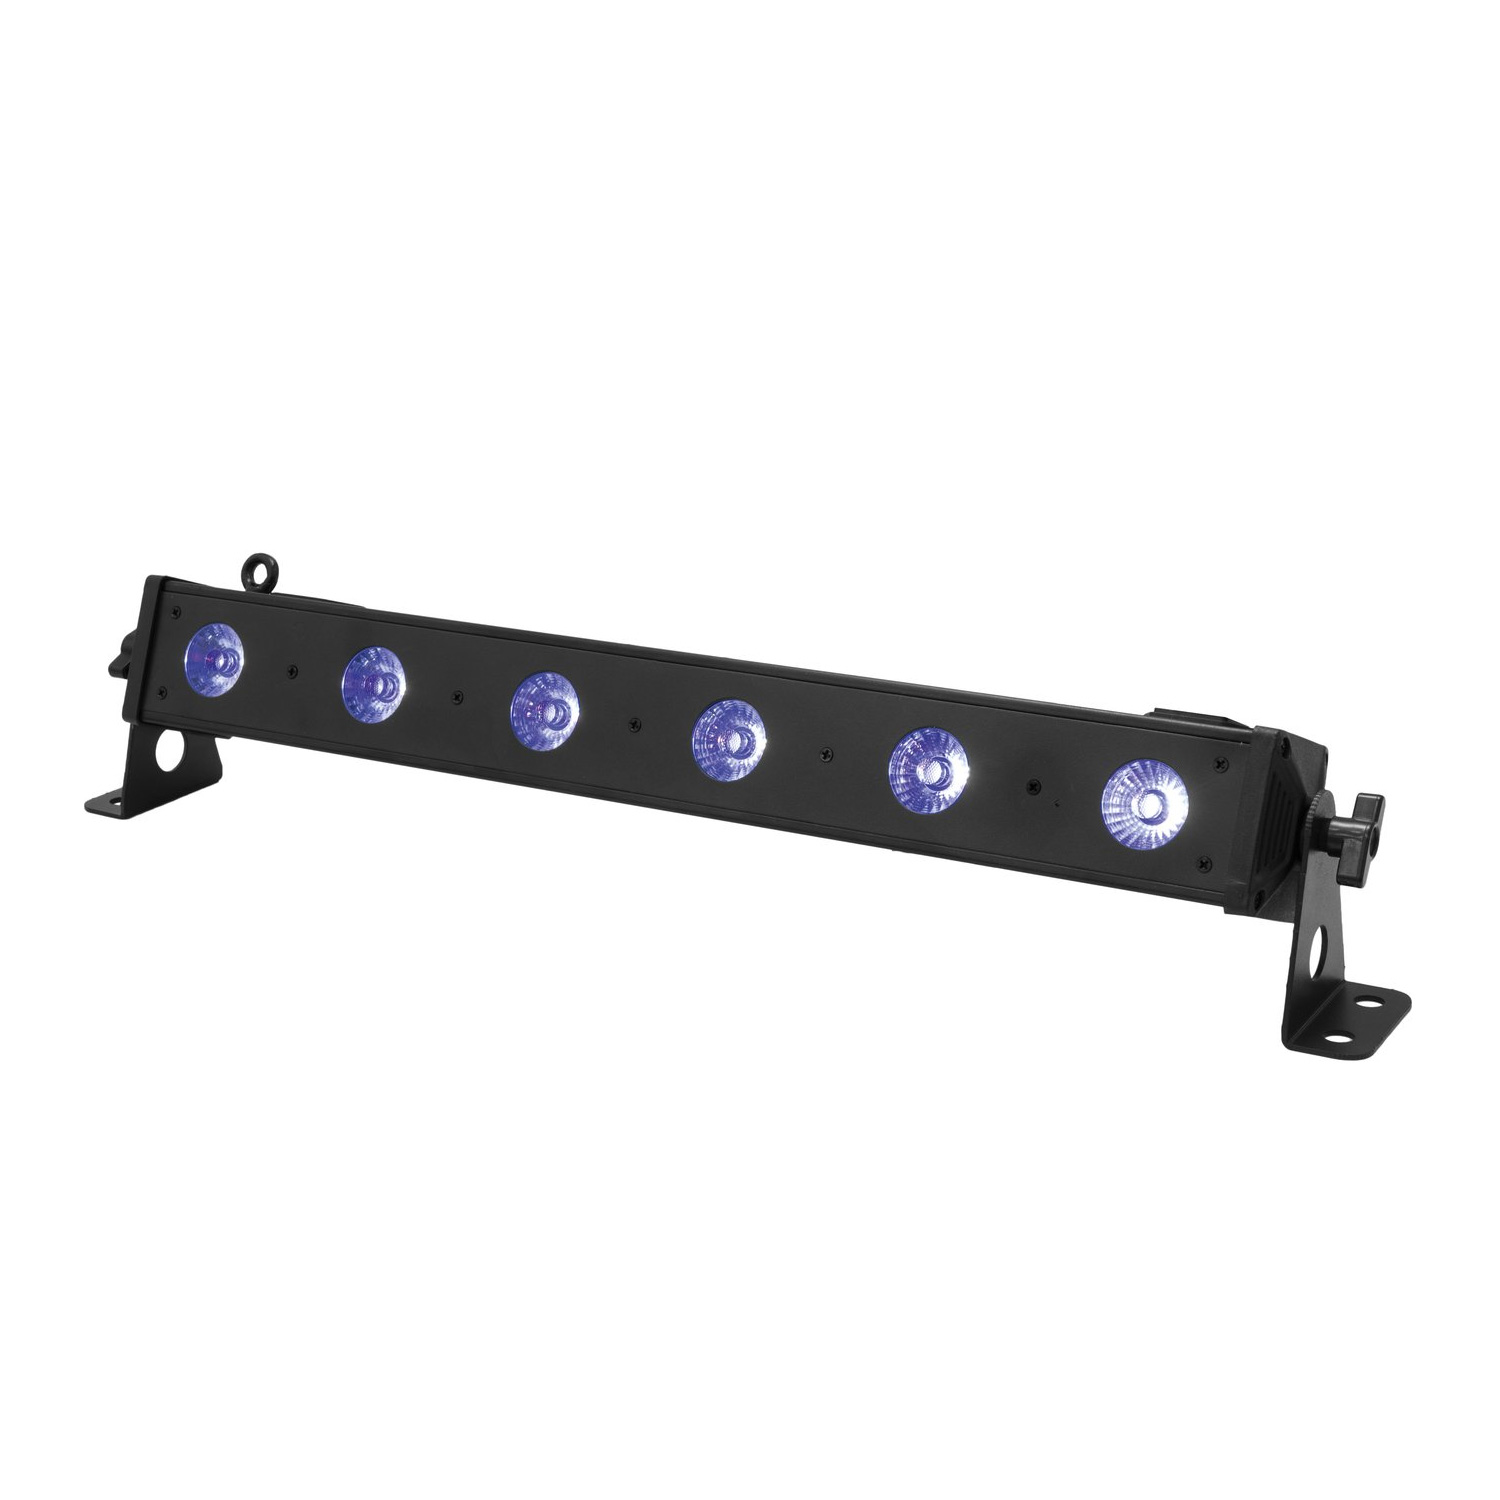 LED BAR-6 QCL RGB+UV Leiste - starke Farbleiste für Wände und Flächen - Integrierte Programme